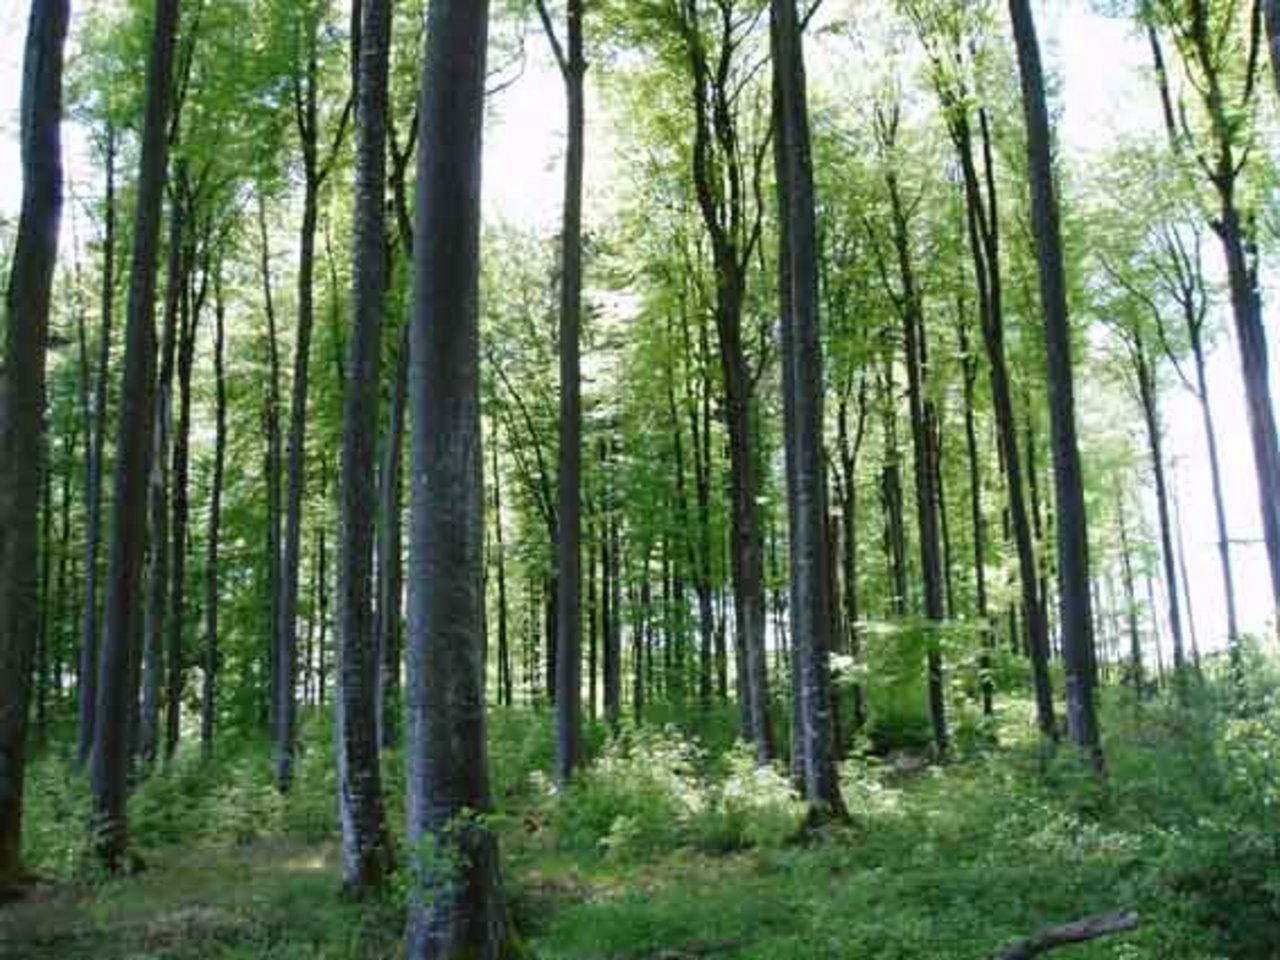 Viele Wälder im Kanton St. Gallen seien überaltert und insgesamt instabiler geworden. (Symbolbild lid)